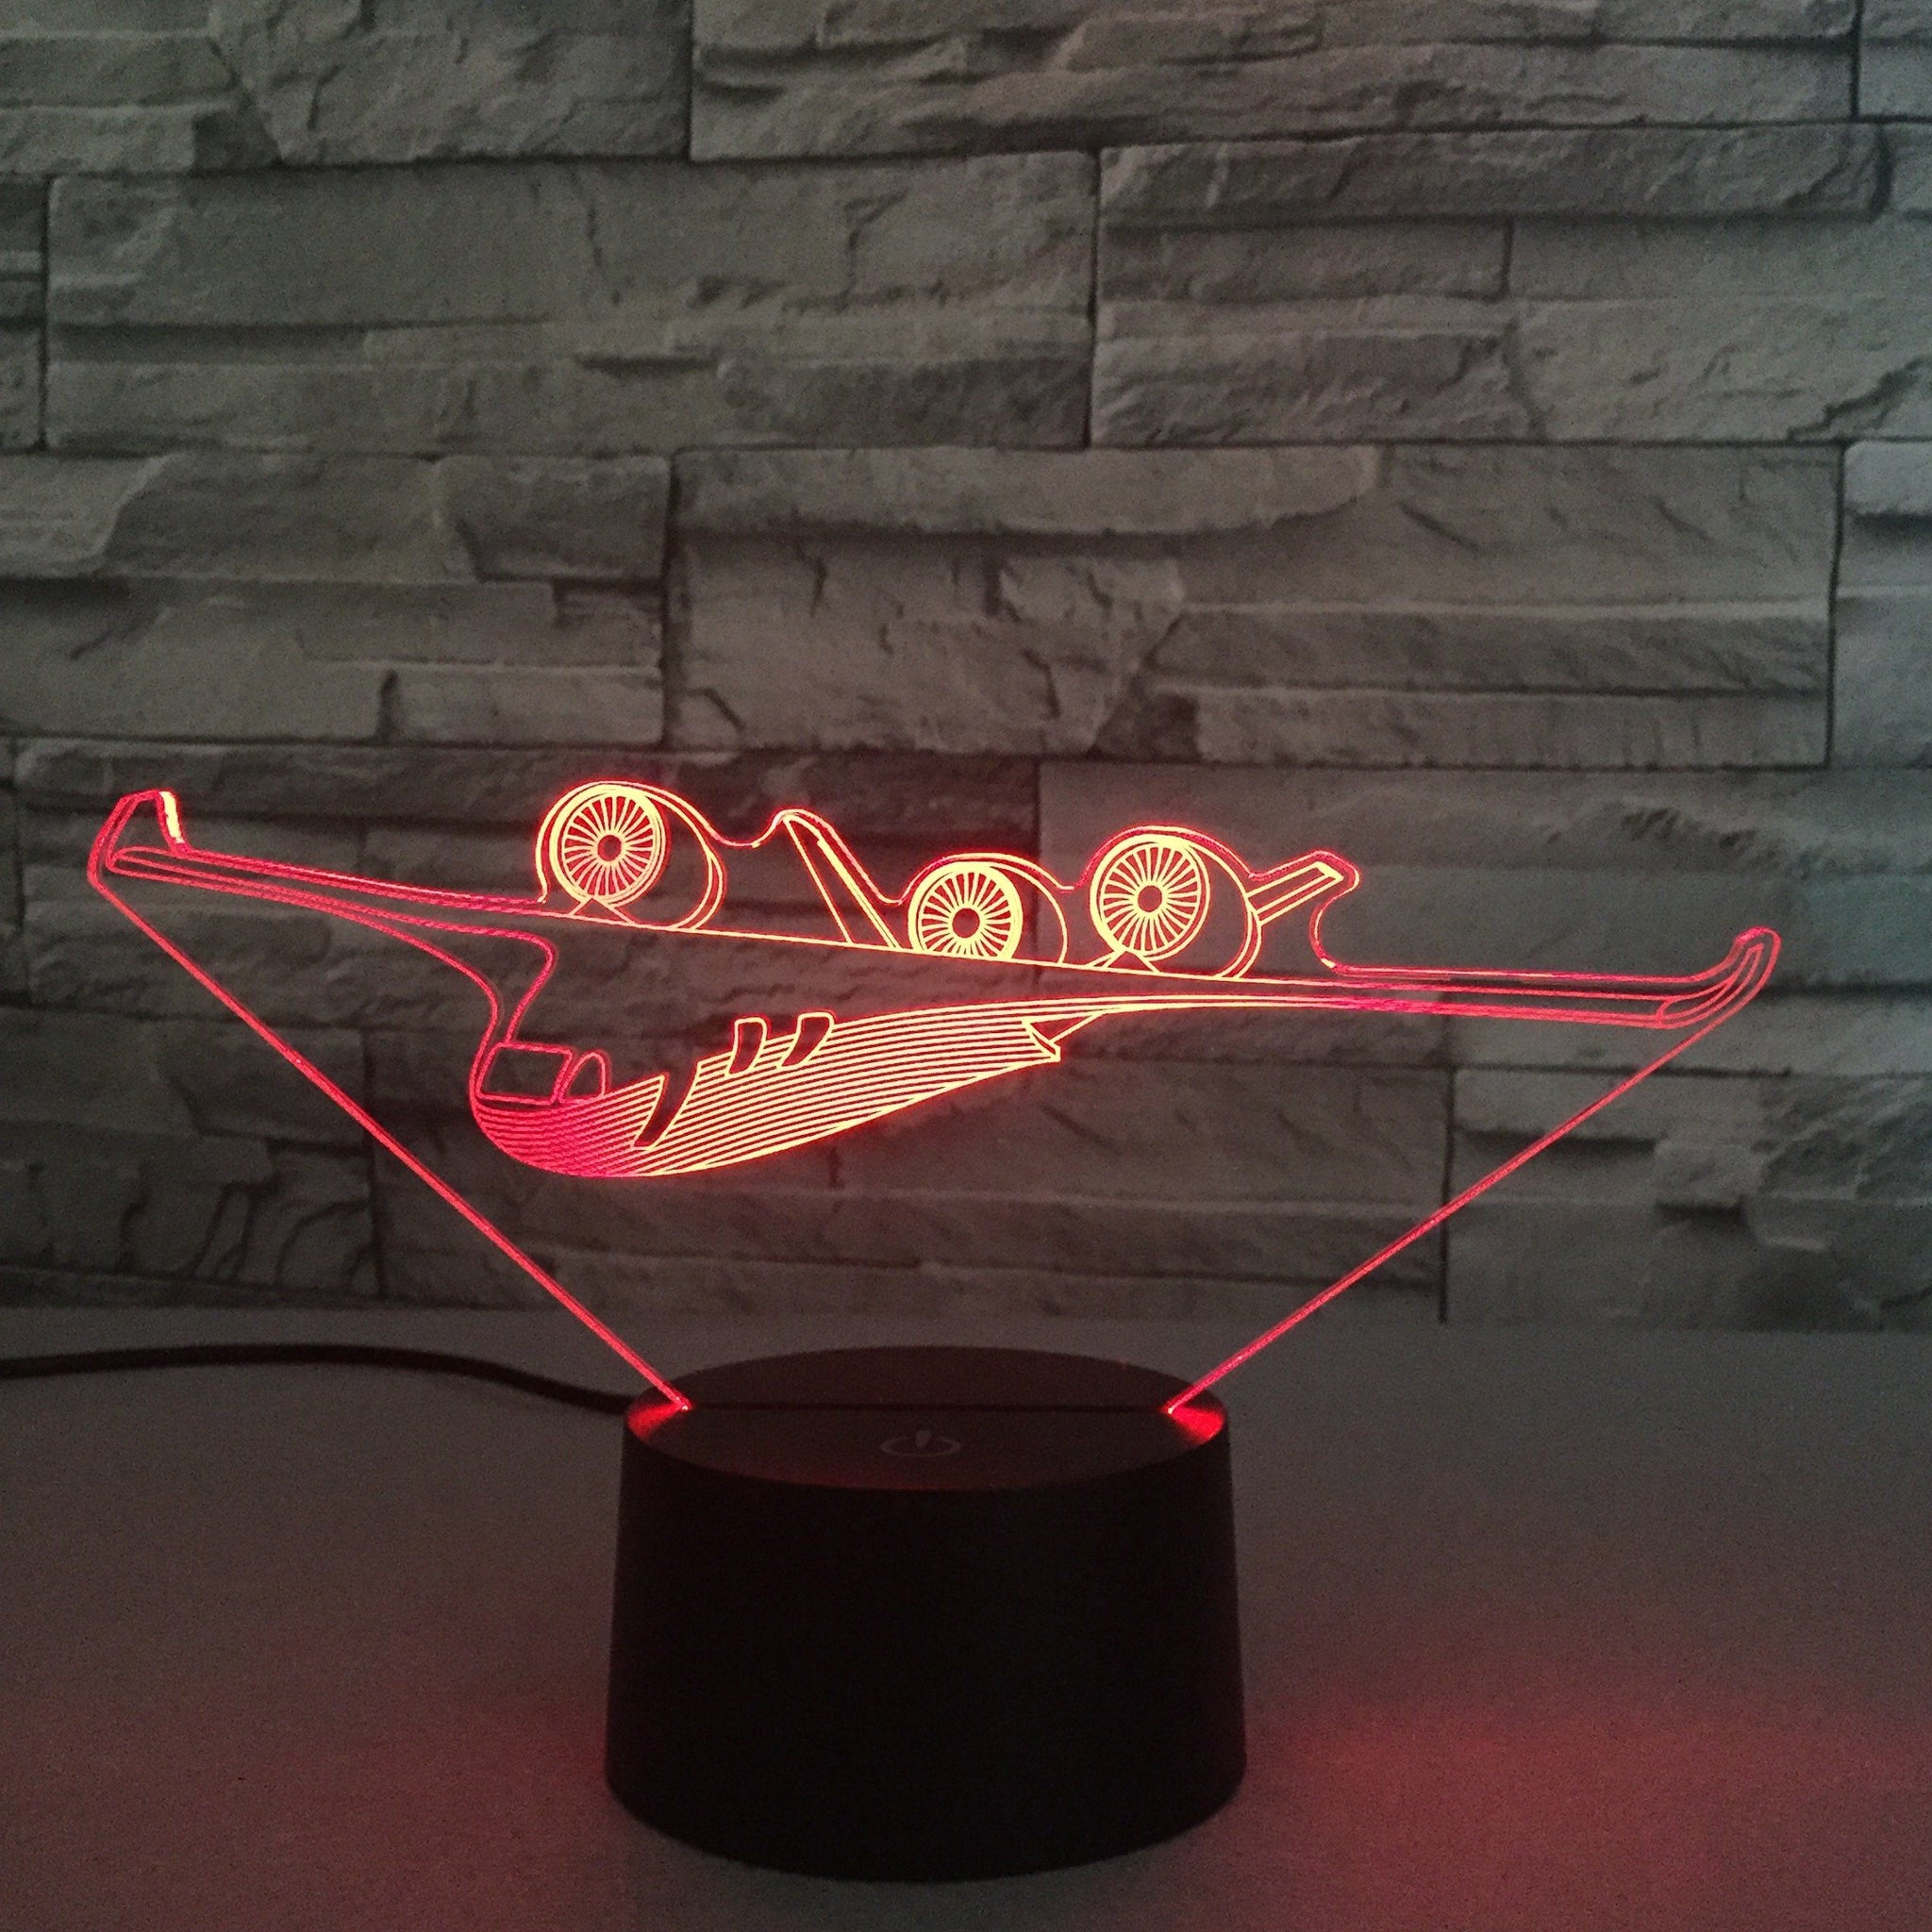 Futuristic Airplane Designed 3D Lamp